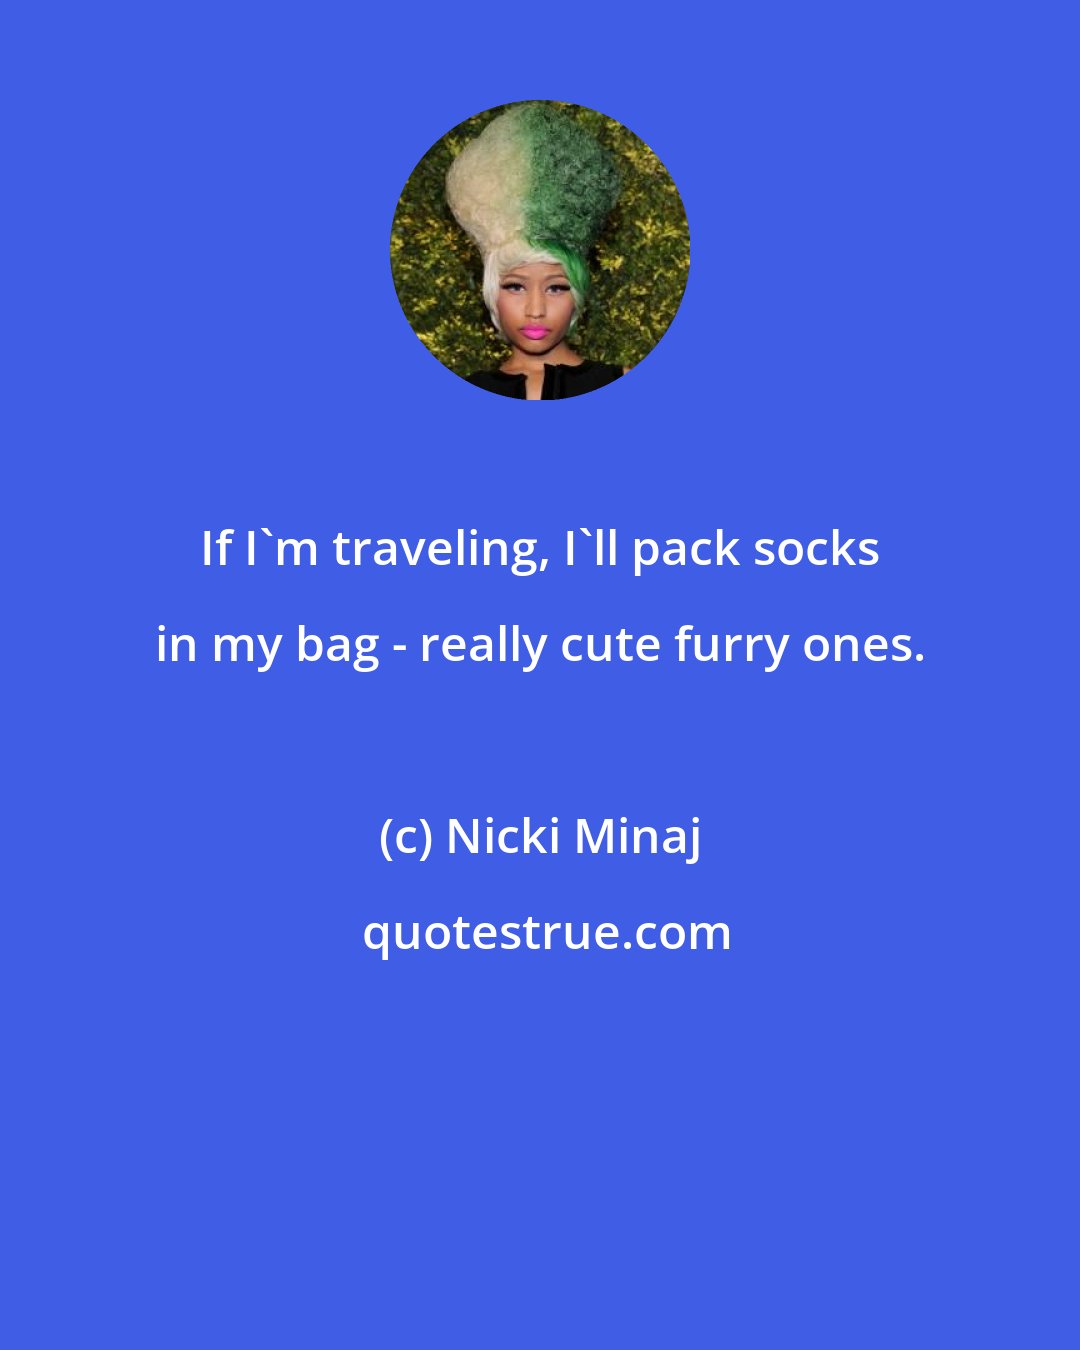 Nicki Minaj: If I'm traveling, I'll pack socks in my bag - really cute furry ones.